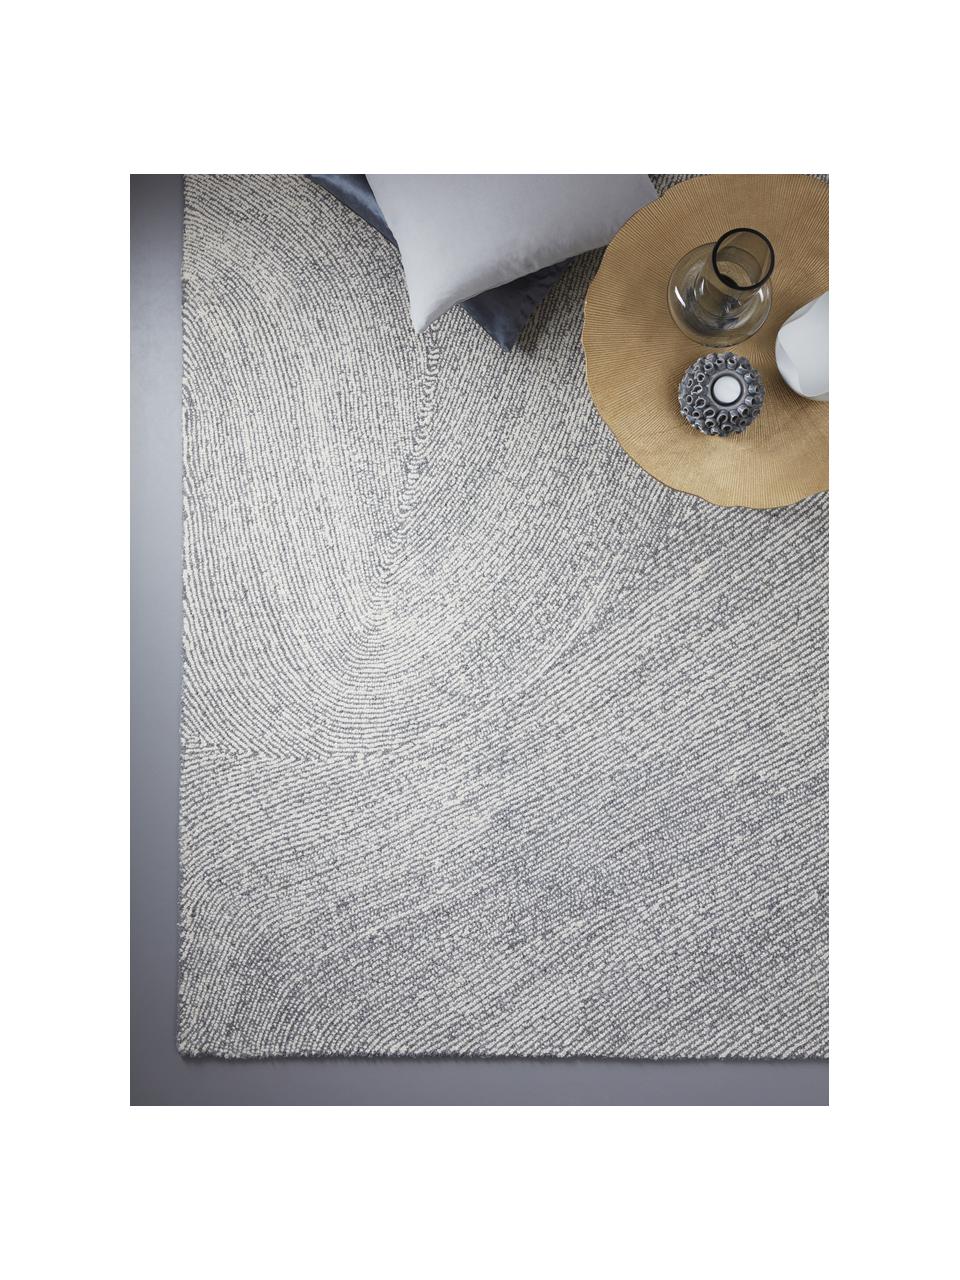 Großer handgewebter Teppich Canyon mit wellenförmiger Musterung in Grau/Weiß, 51% Polyester, 49% Wolle, Grau, B 200 x L 300 cm (Größe L)